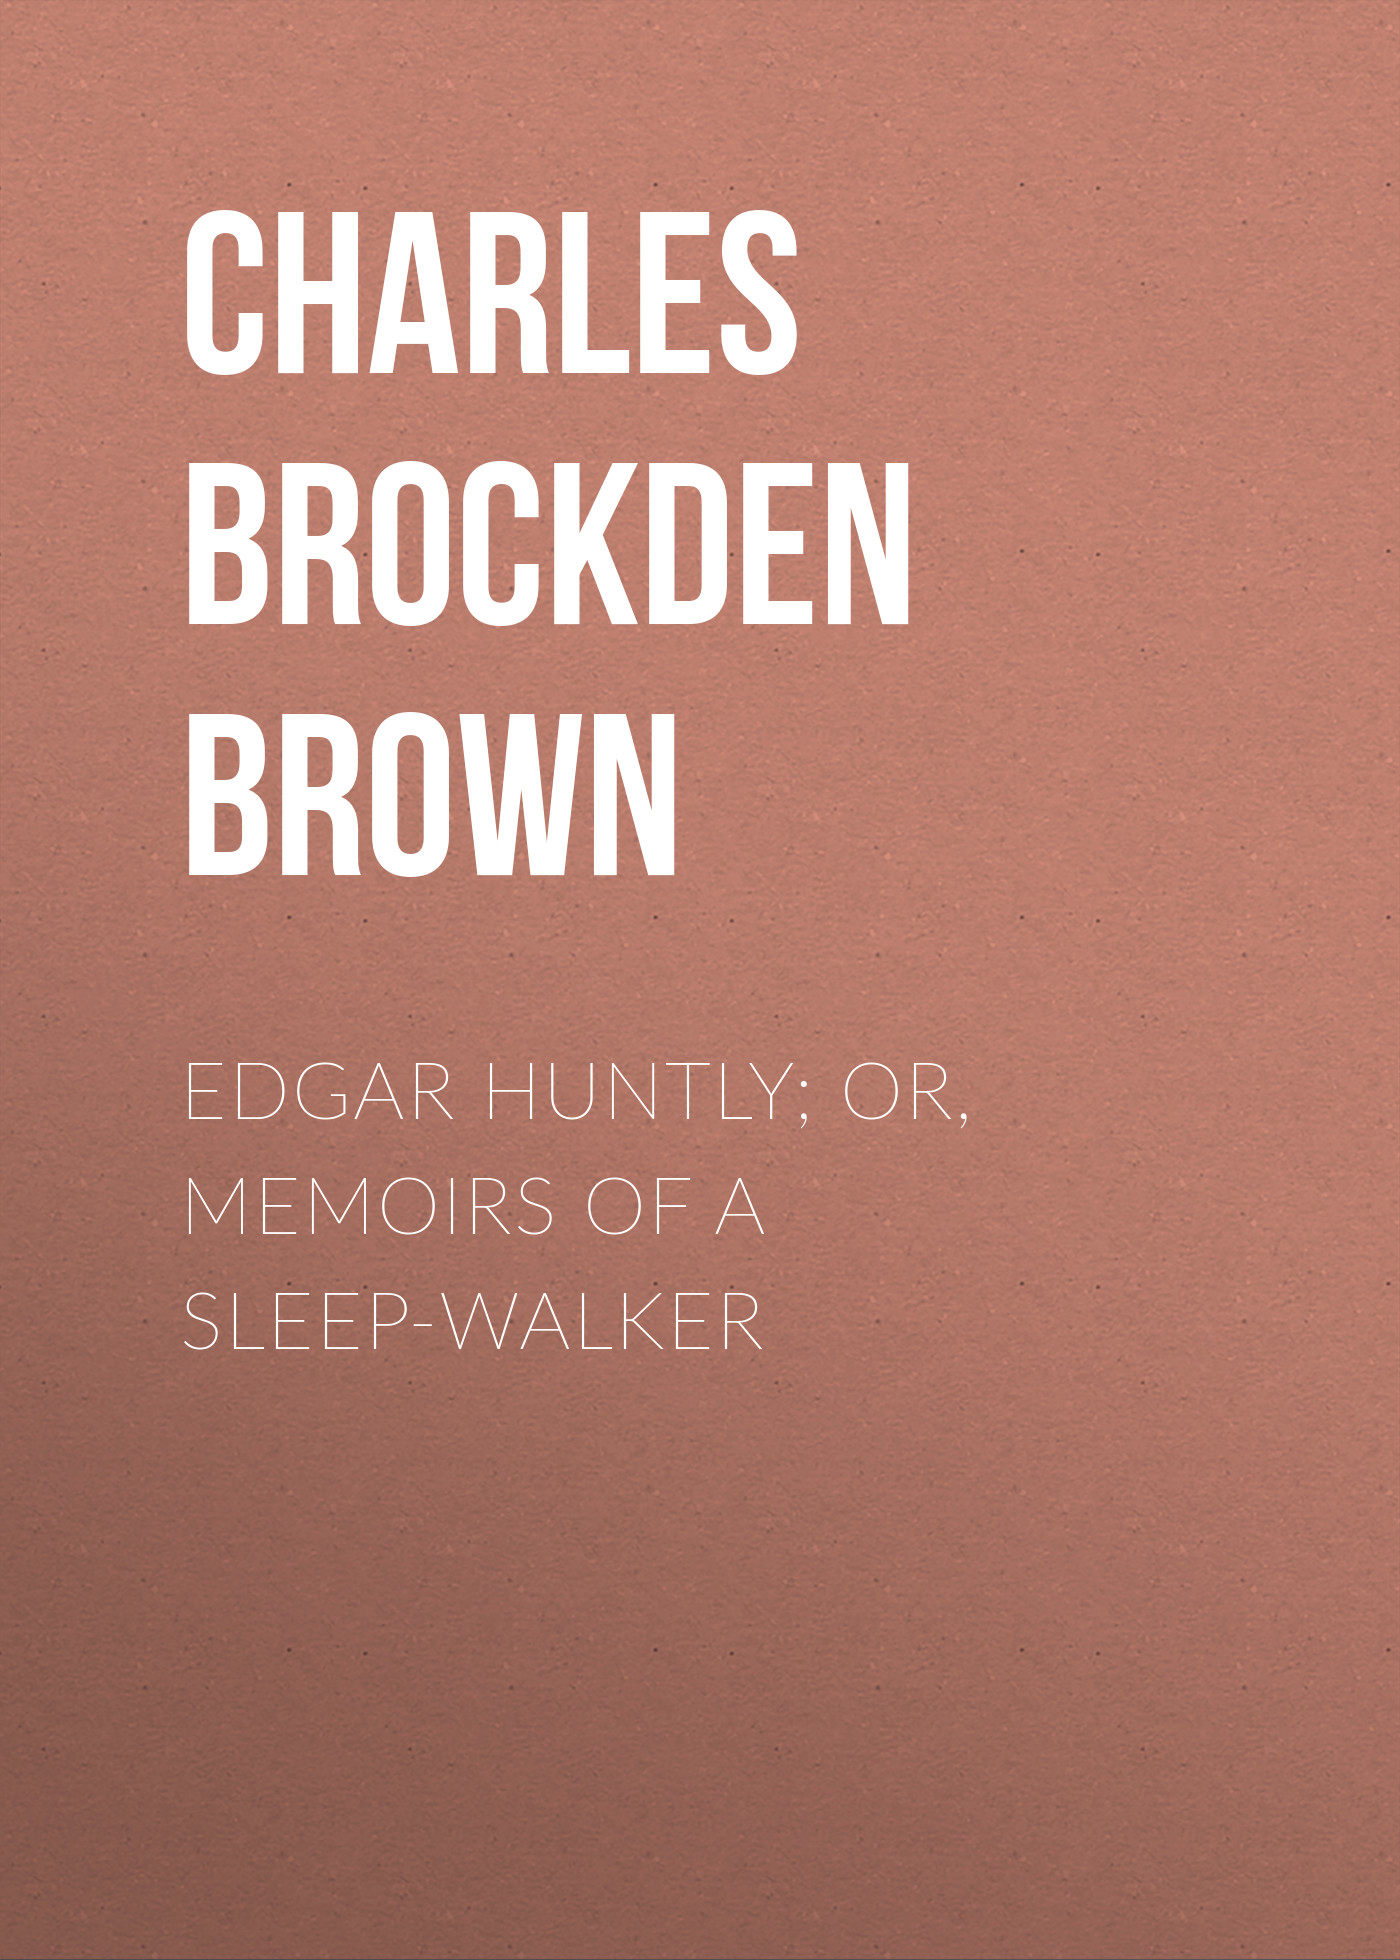 Книга Edgar Huntly; or, Memoirs of a Sleep-Walker из серии , созданная Charles Brown, может относится к жанру Зарубежная классика, Зарубежная старинная литература. Стоимость электронной книги Edgar Huntly; or, Memoirs of a Sleep-Walker с идентификатором 36091933 составляет 0 руб.